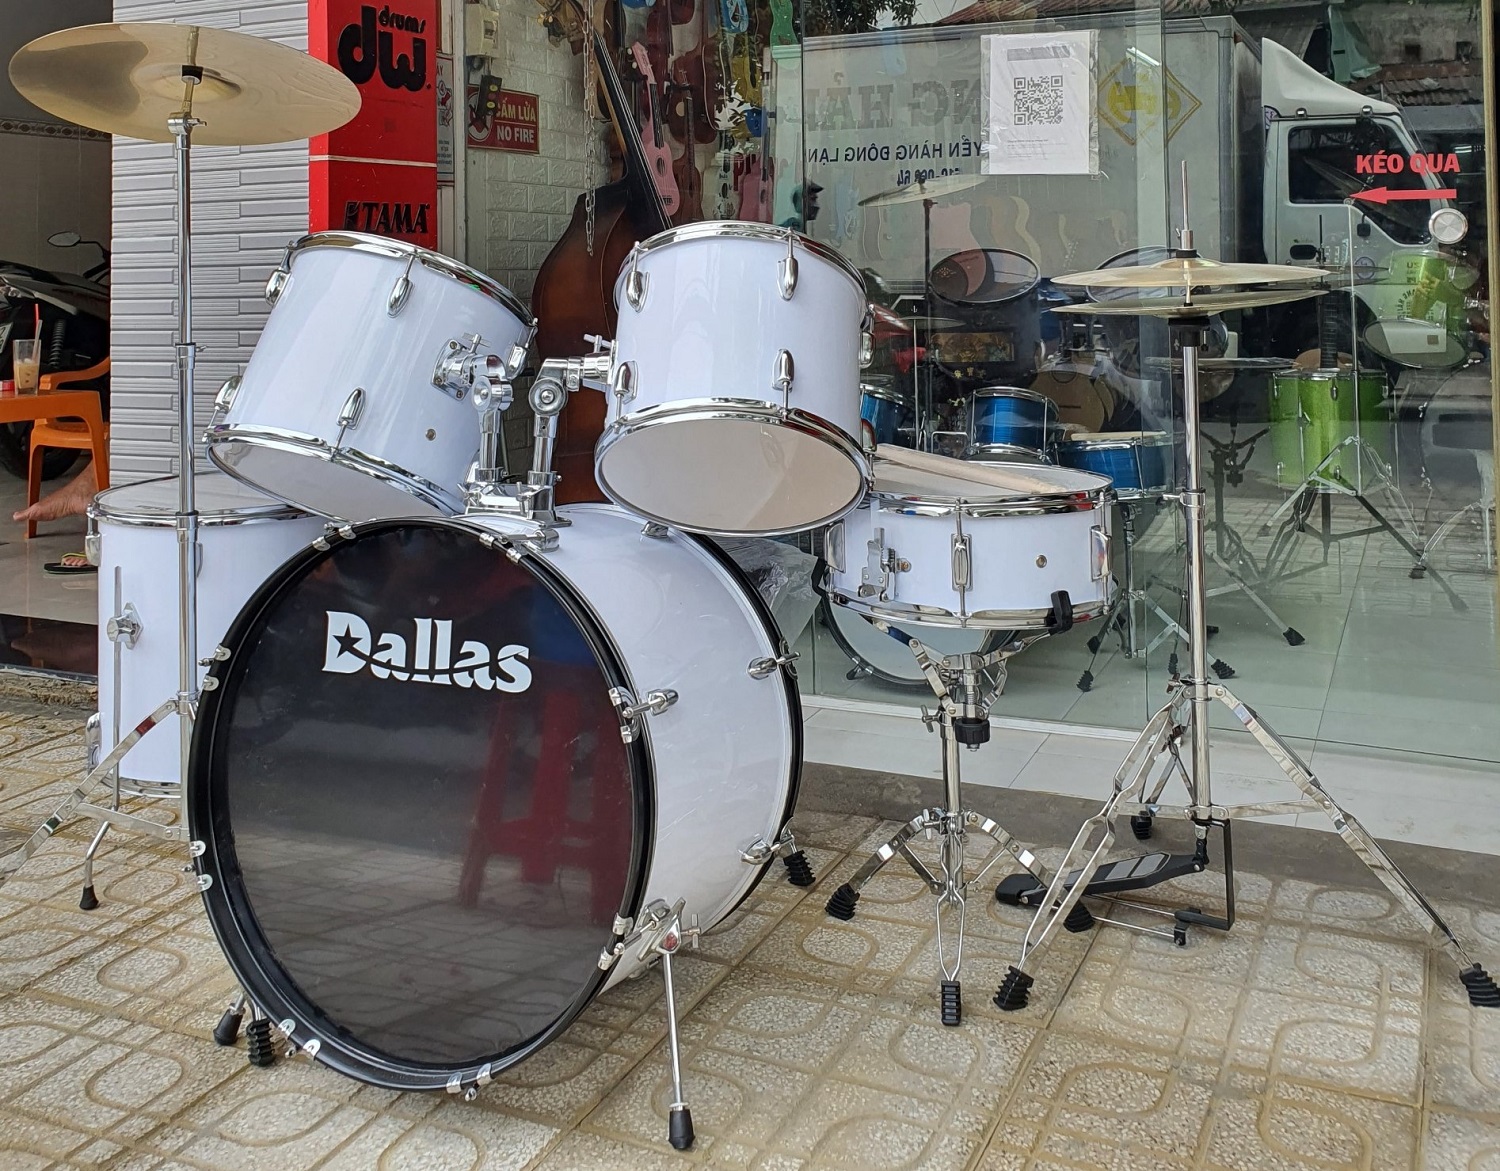 Dàn trống jazz drum Dallas DL221 trắng